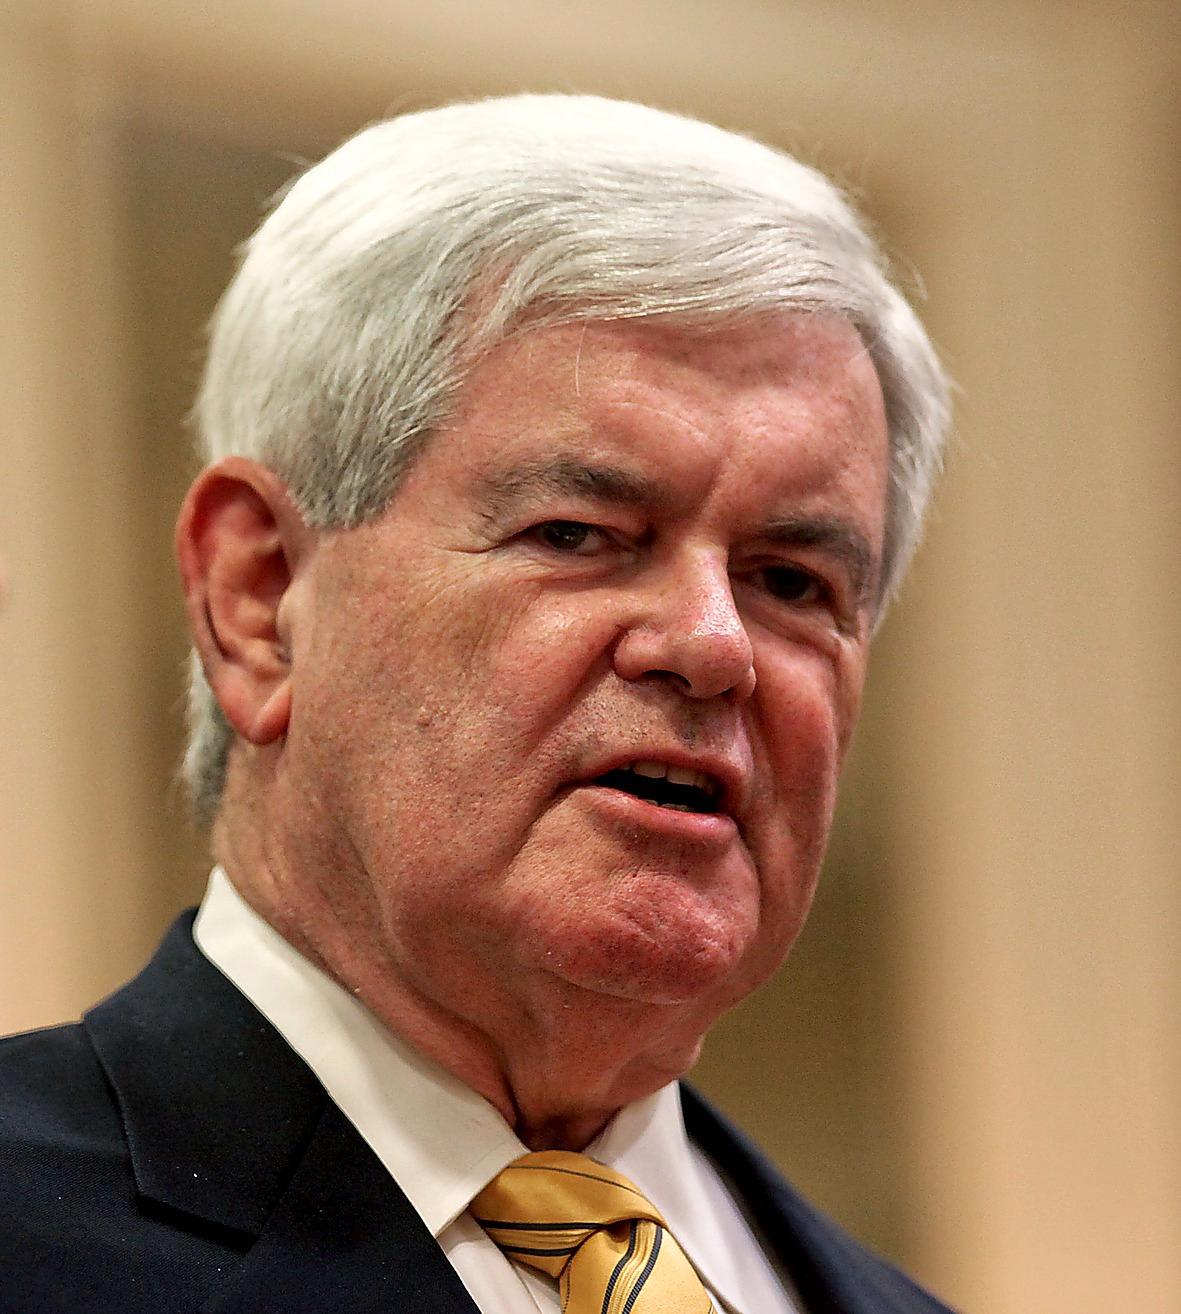 FRONT RUNNER Newt Gingrich har gått från uträknad till favorittippad i kampen om vem som ska få utmana Barack Obama i presidentvalet.